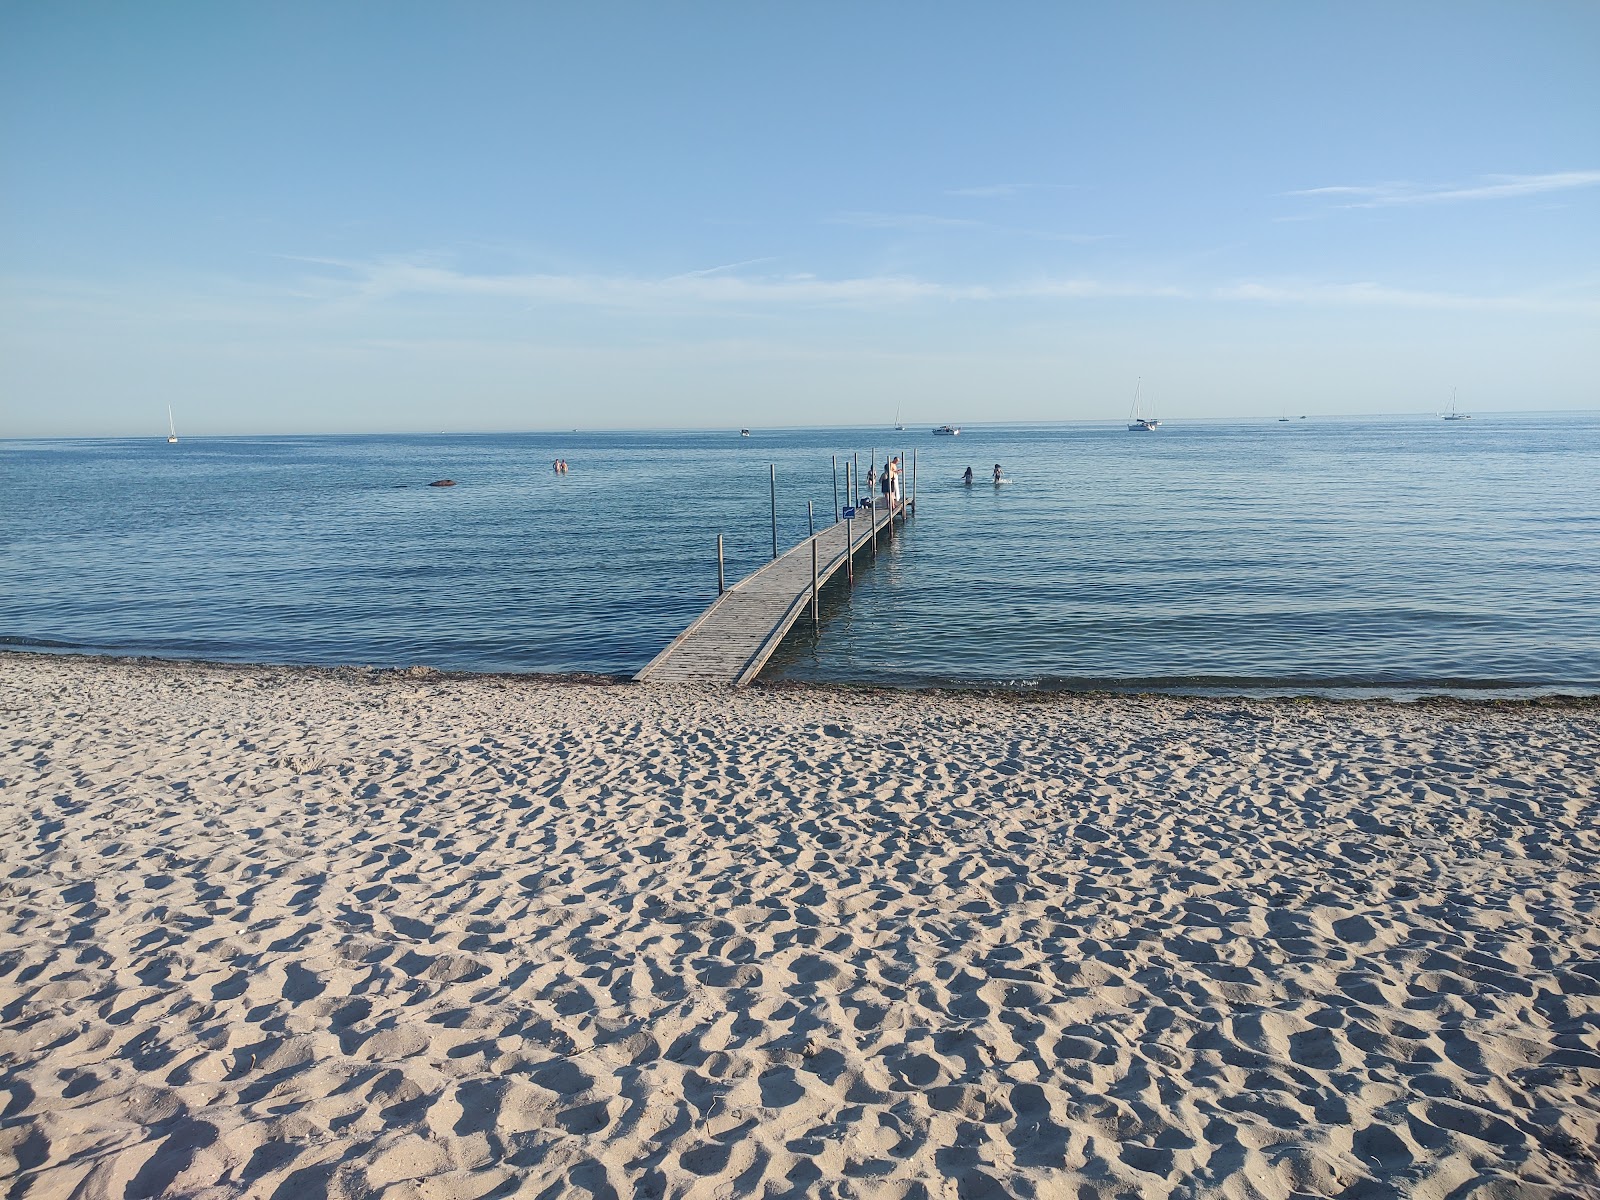 Zdjęcie Brondby Beach - popularne miejsce wśród znawców relaksu